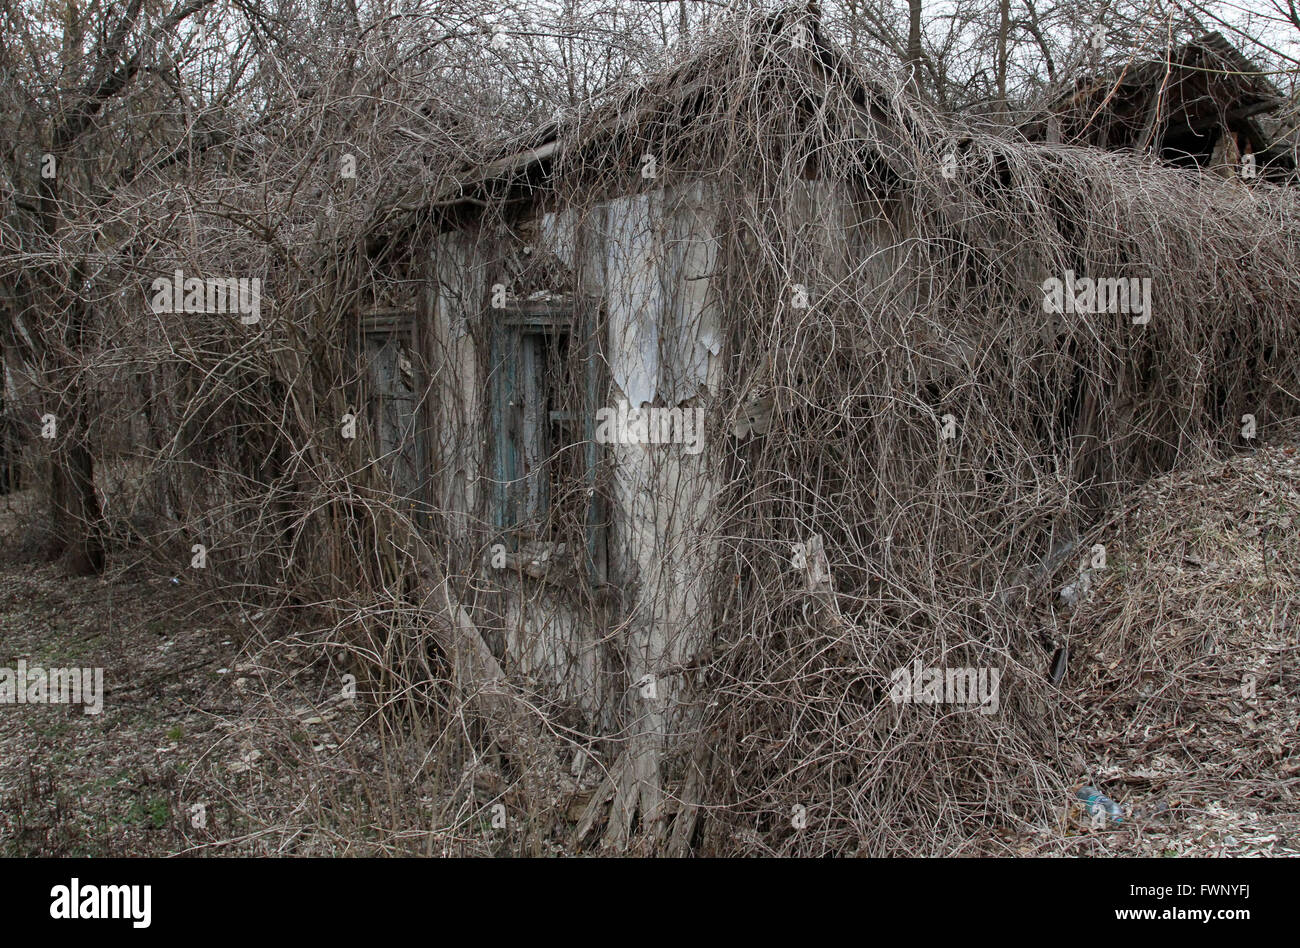 Une photo prise le 28 mars 2011 montre maison abandonnée dans la ville de Tchernobyl, à 9 km de la centrale nucléaire de Tchernobyl. Après l'explosion à la centrale nucléaire de Tchernobyl, 30 km de la zone d'exclusion a été créé autour du site. L'ensemble de ces zones sont désertes et entouré par des points de contrôle. Mar 28, 2011. © Michel Stepanov/ZUMA/Alamy Fil Live News Banque D'Images